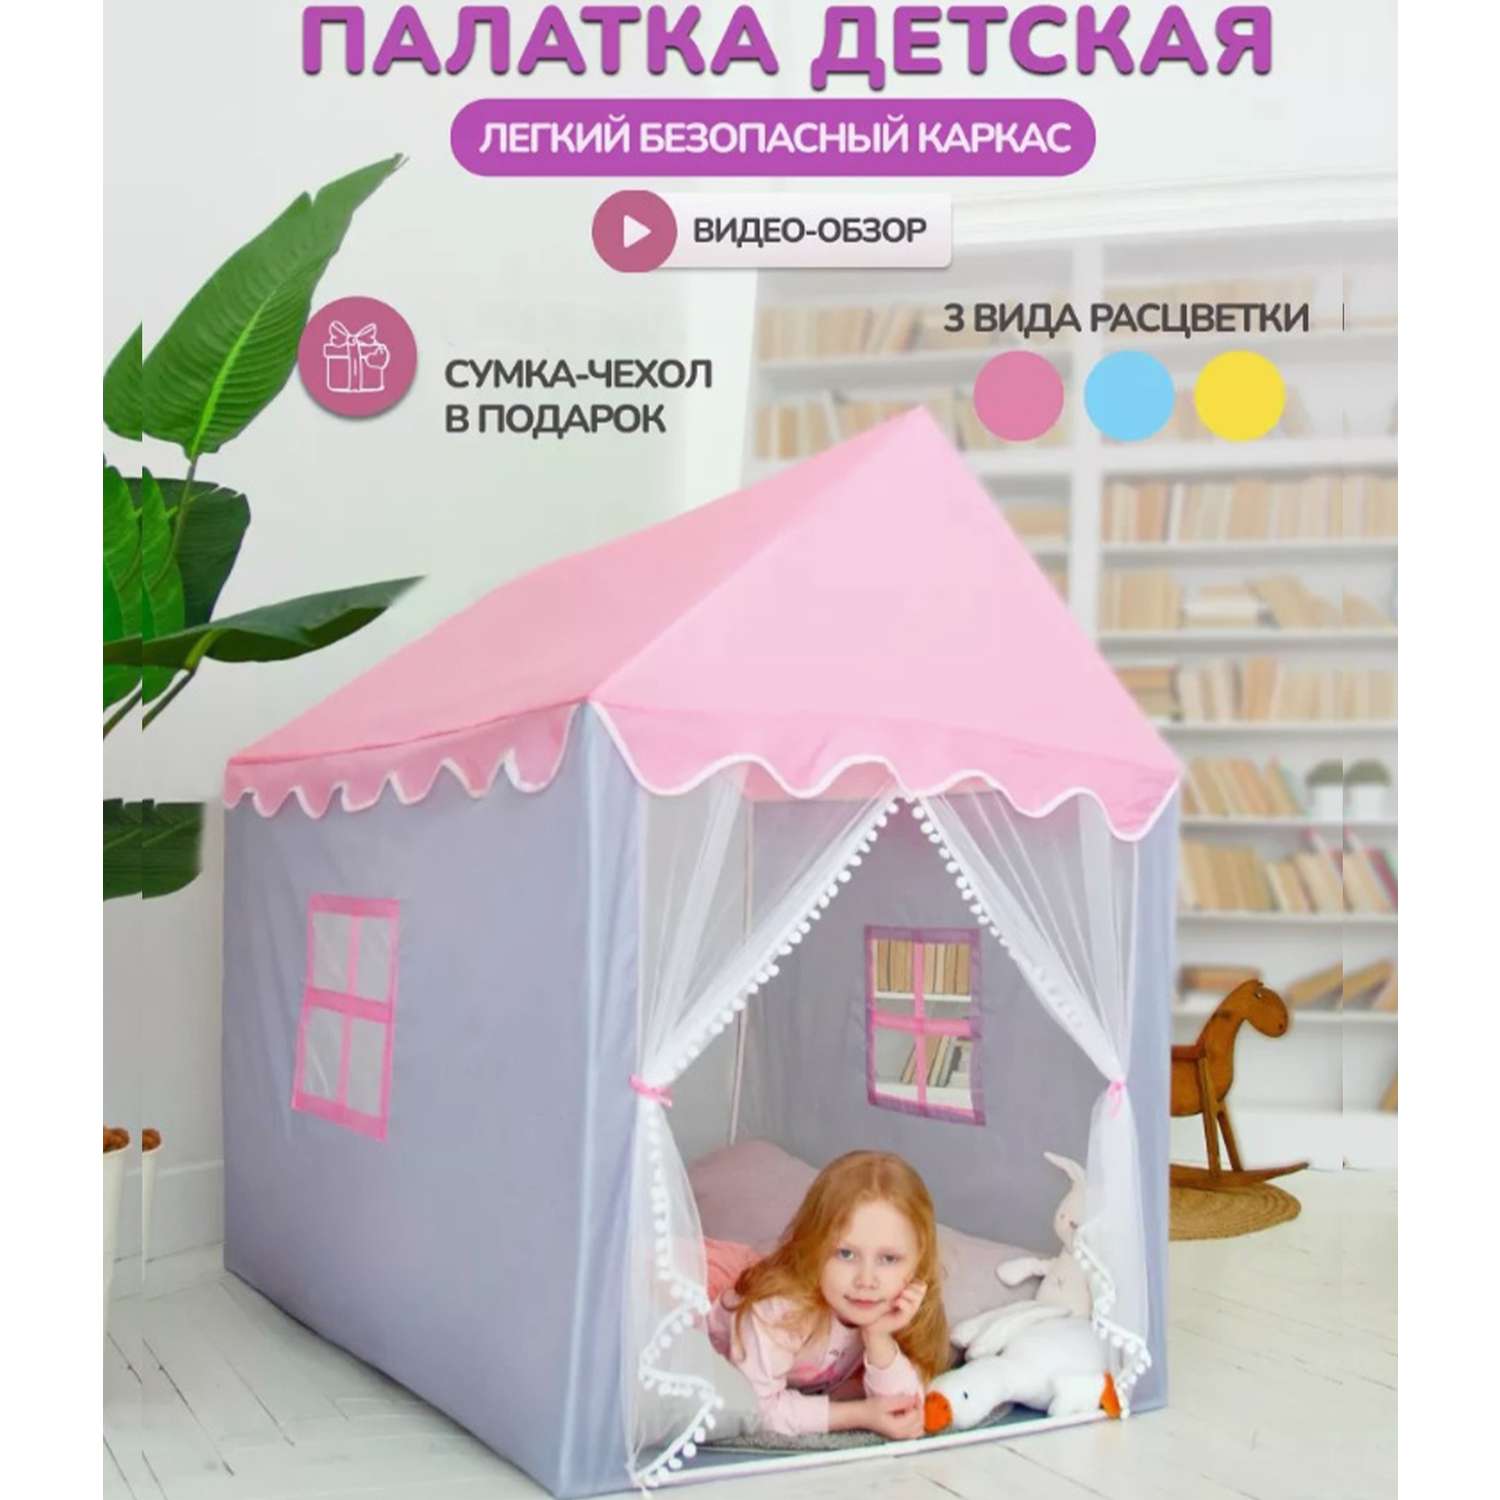 Детская игровая палатка ТОТОША домик для детей и игрушек - фото 2